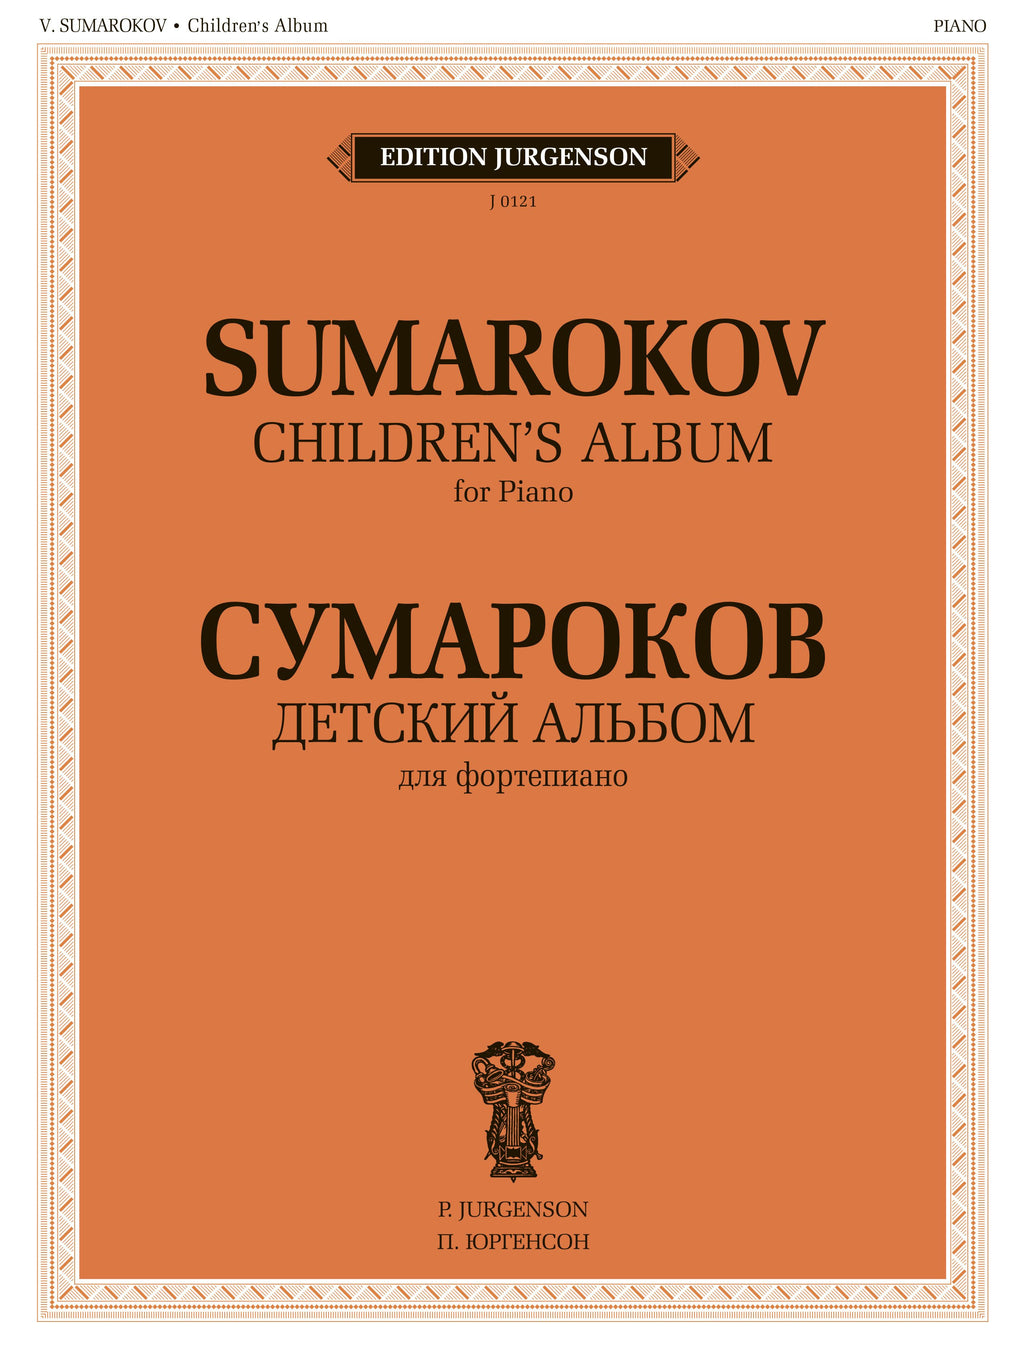 V. Sumarokov. Children’s Album for Piano